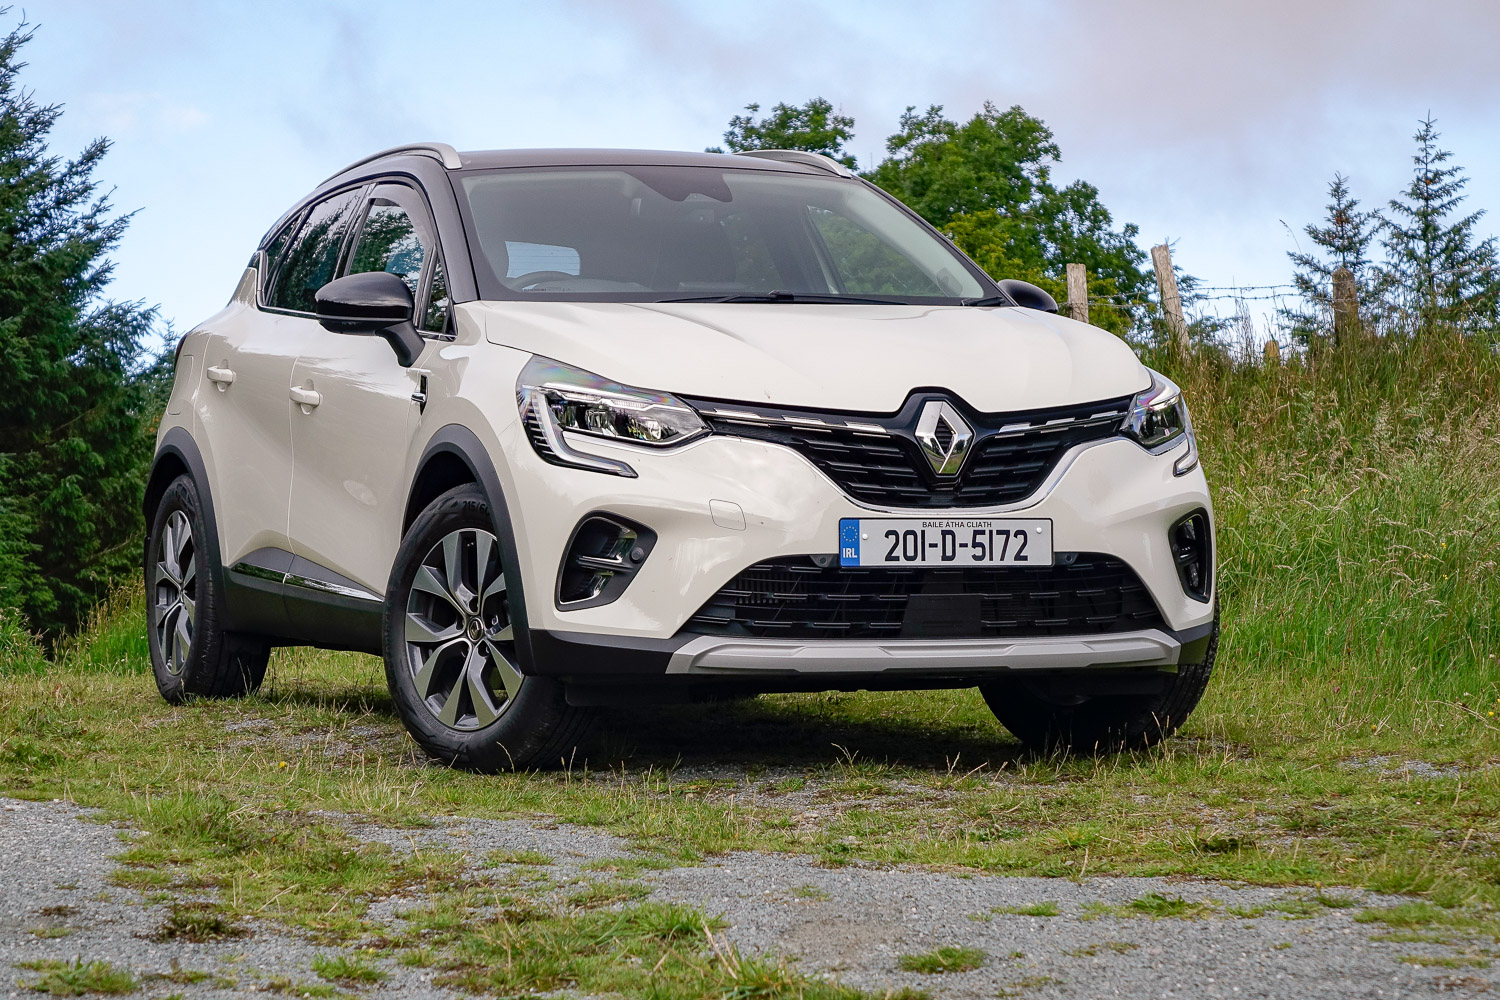 Renault Captur 1.0 TCe 100 (2020), Reviews